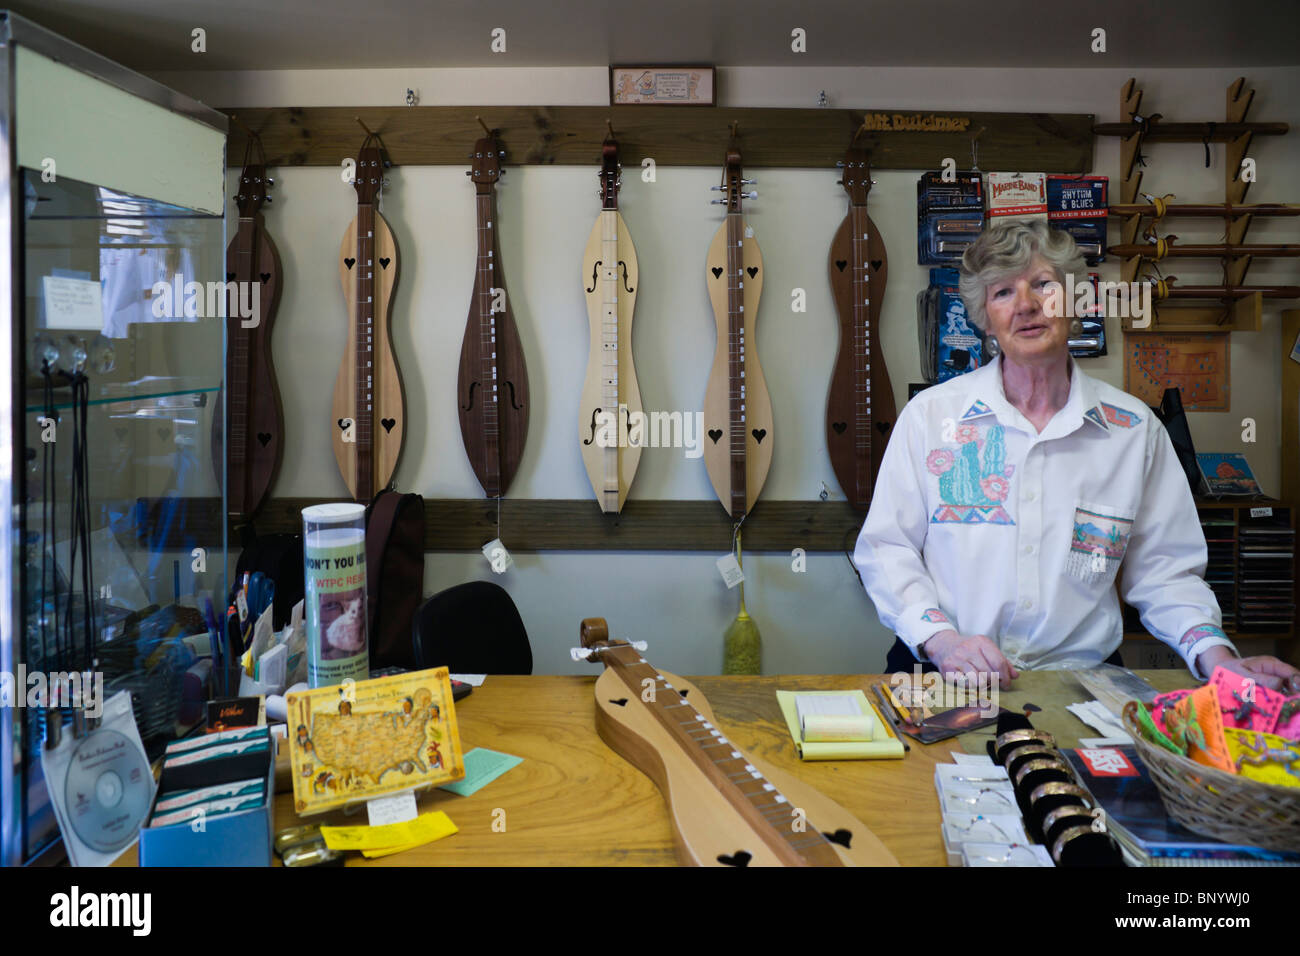 Sedona, Arizona - Sedona Sunset shop, which specialises in American Mountain Dulcimer or lap dulcimer fretted instruments. Stock Photo